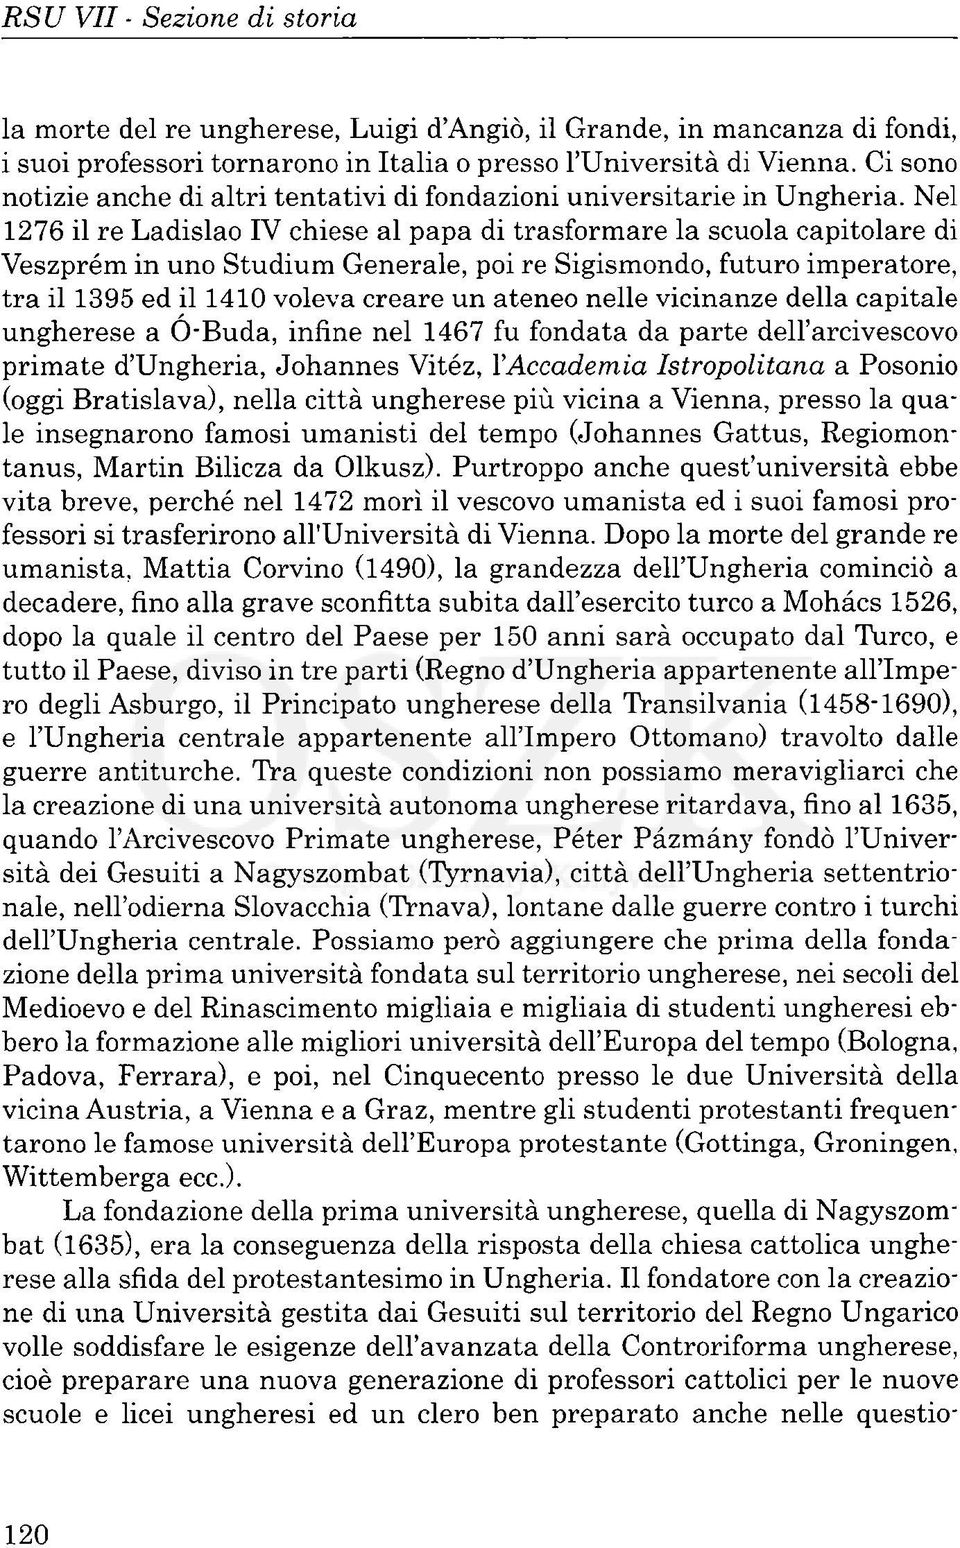 Nel 1276 il re Ladislao IV chiese al papa di trasformare la scuola capitolare di Veszprém in uno Studium Generale, poi re Sigismondo, futuro imperatore, tra il 1395 ed il 1410 voleva creare un ateneo